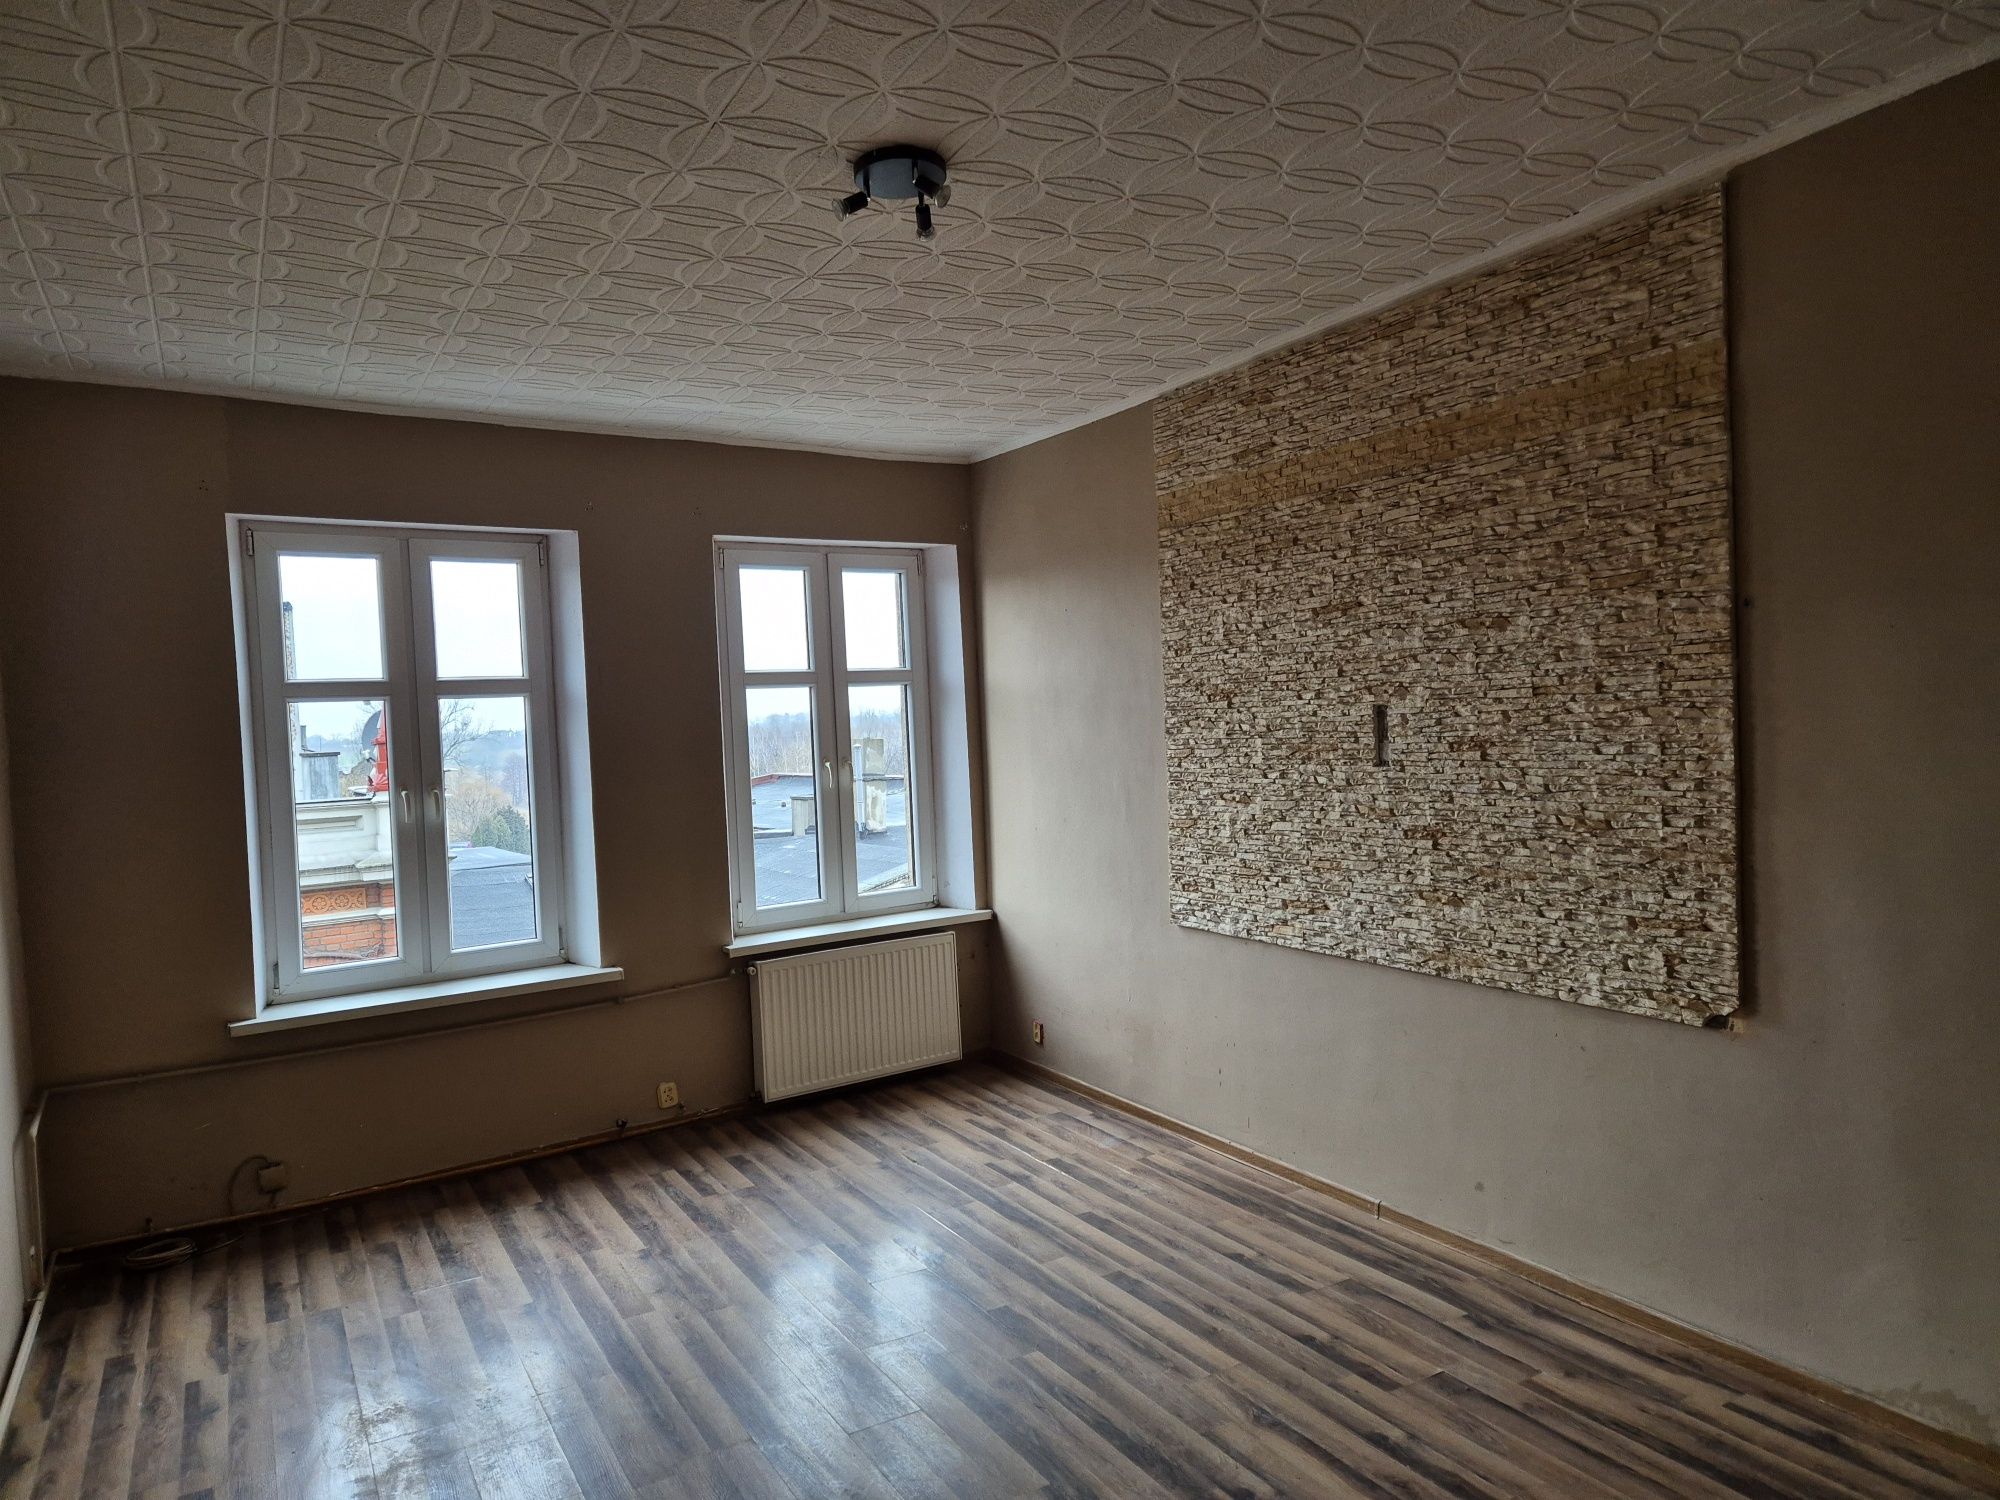 Wynajmę mieszkanie dwupokojowe w centrum Chełmży 46 m2 , 2p.